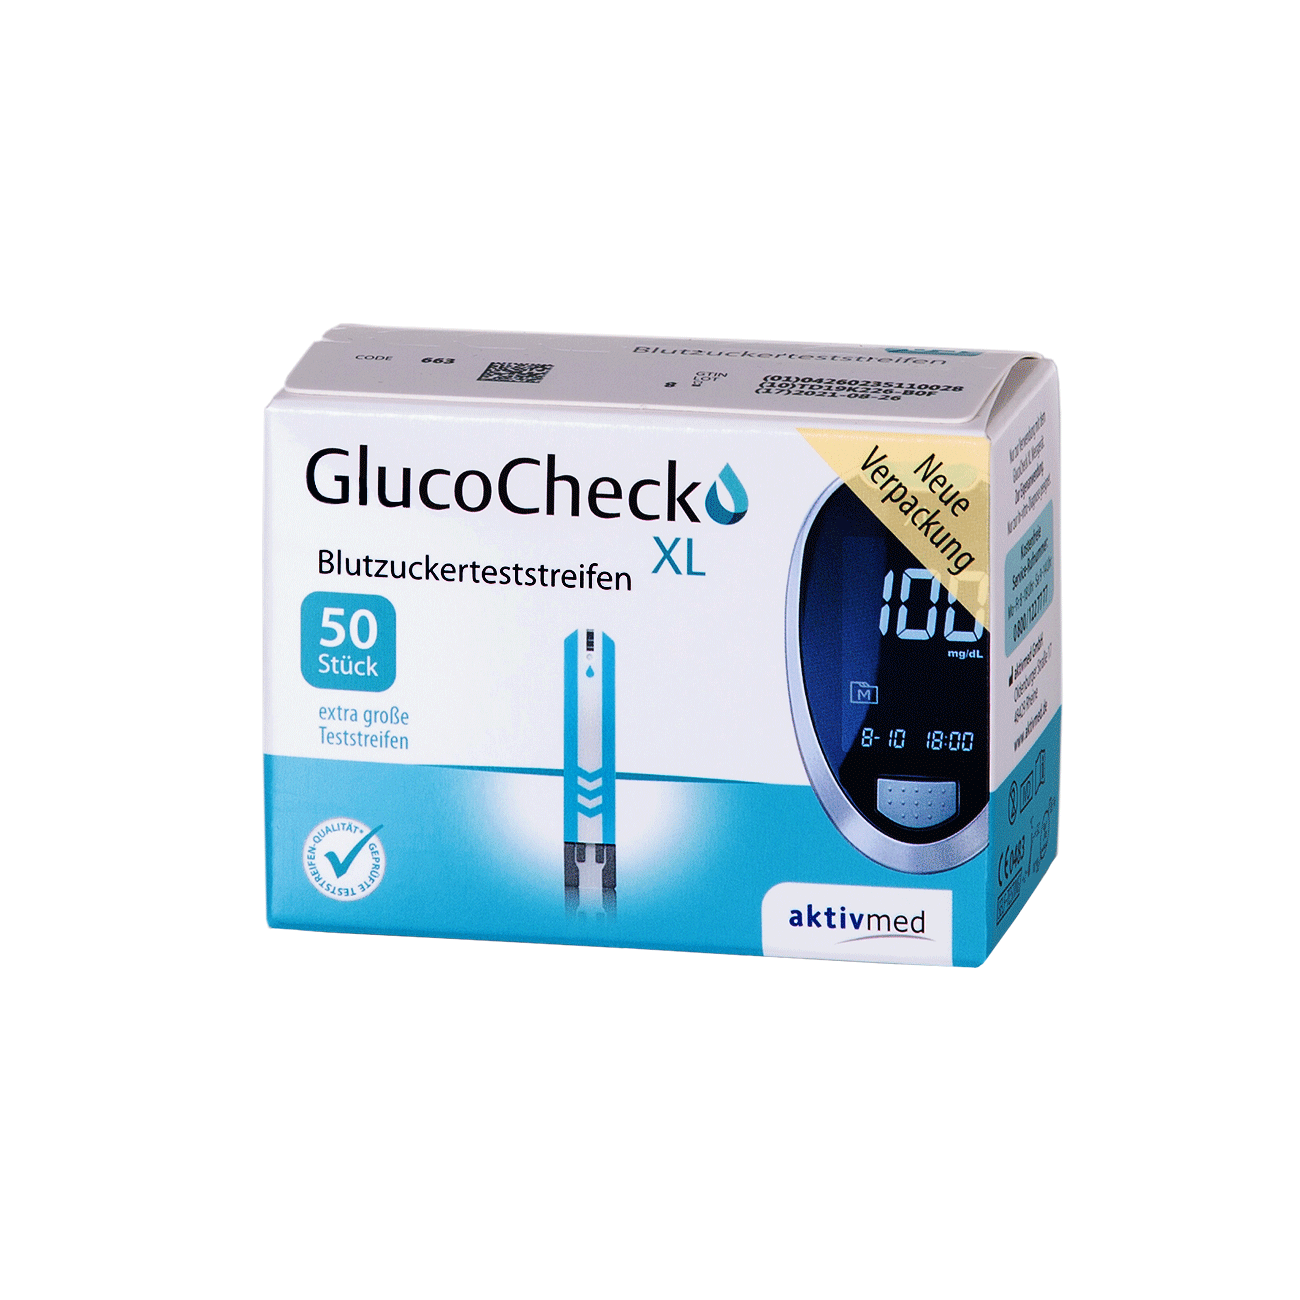 GlucoCheck XL Blutzuckerteststreifen - Packung à 50 Stück 